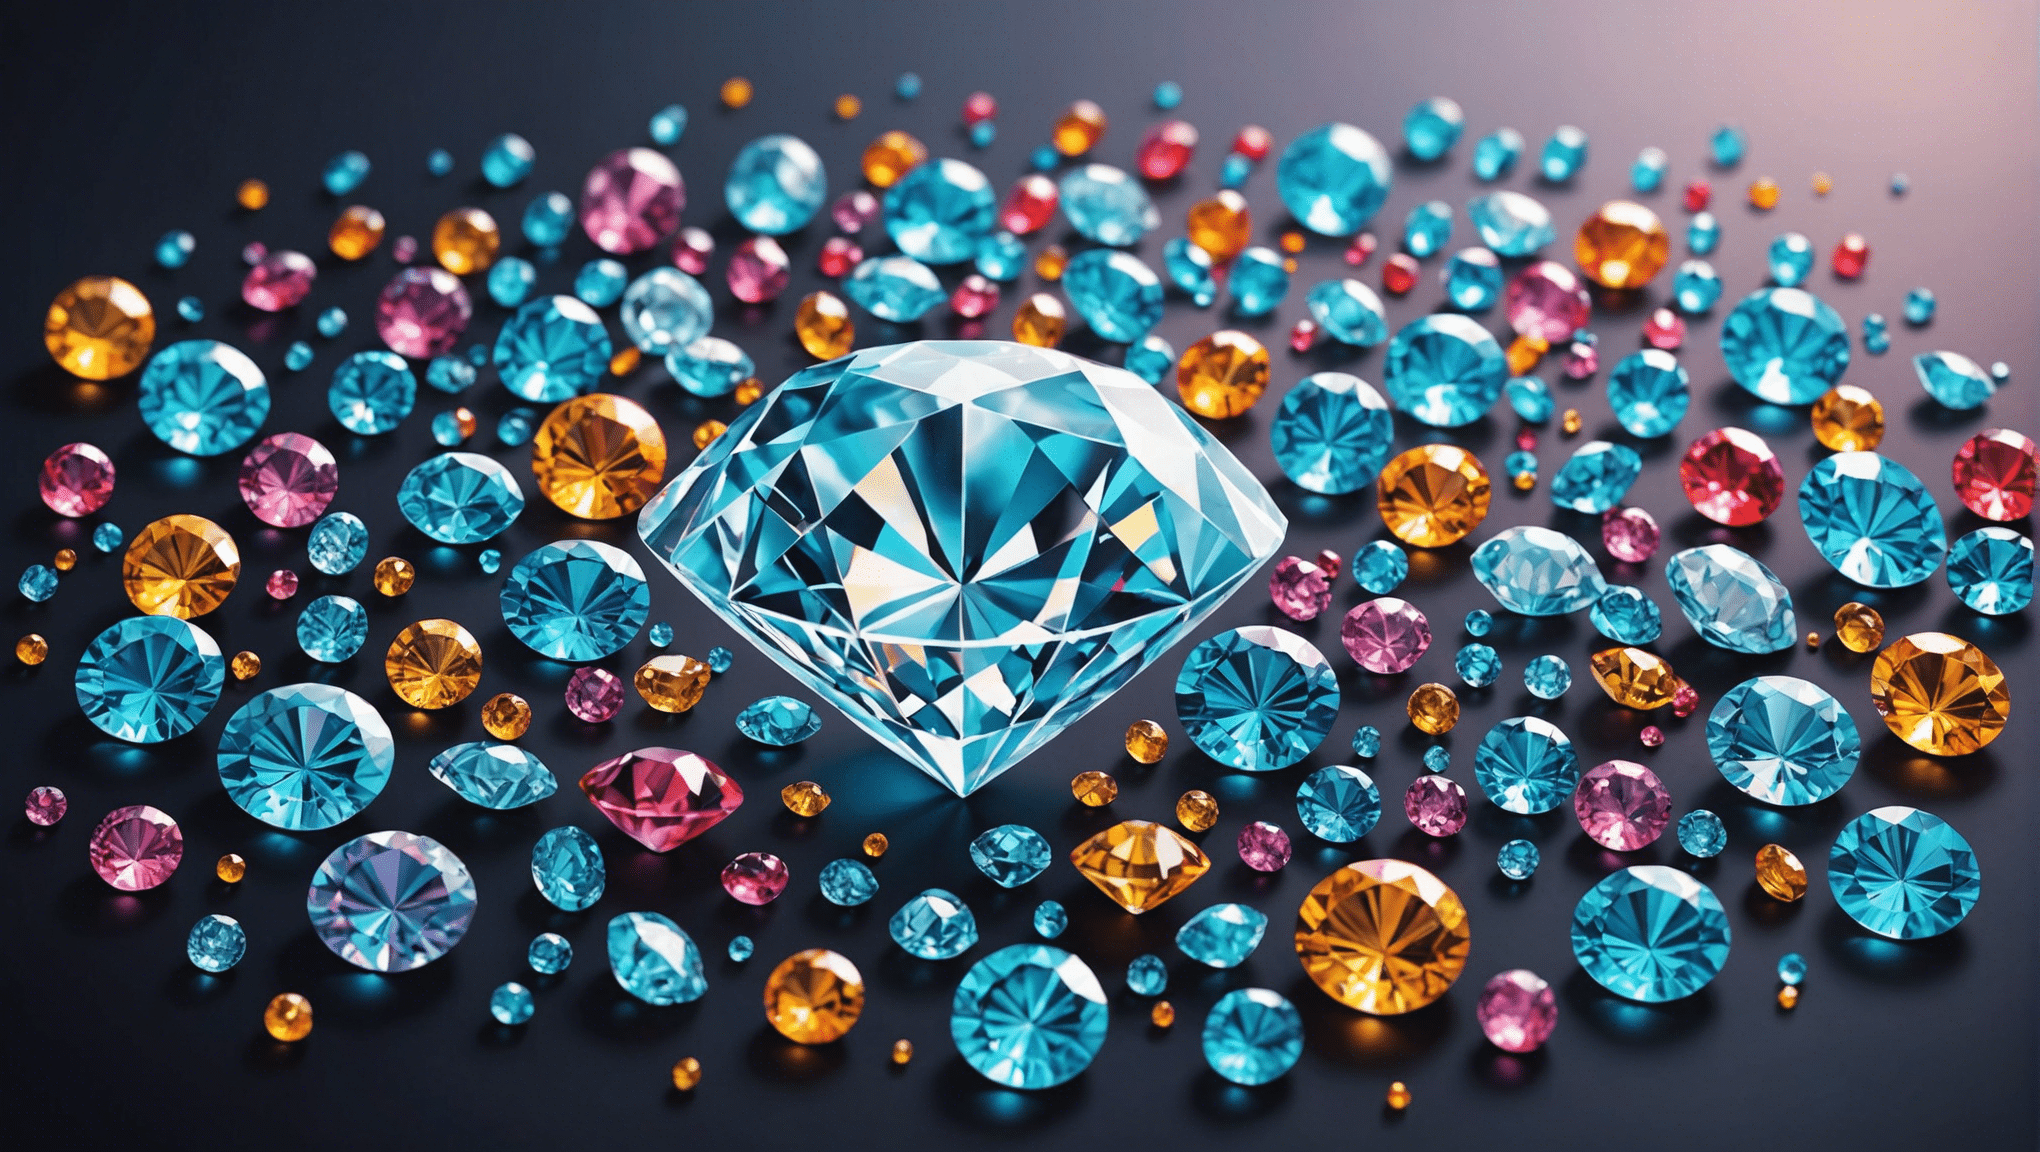 découvrez ce qu'est un kit de diamond painting et apprenez comment débuter dans cette activité artistique fascinante.